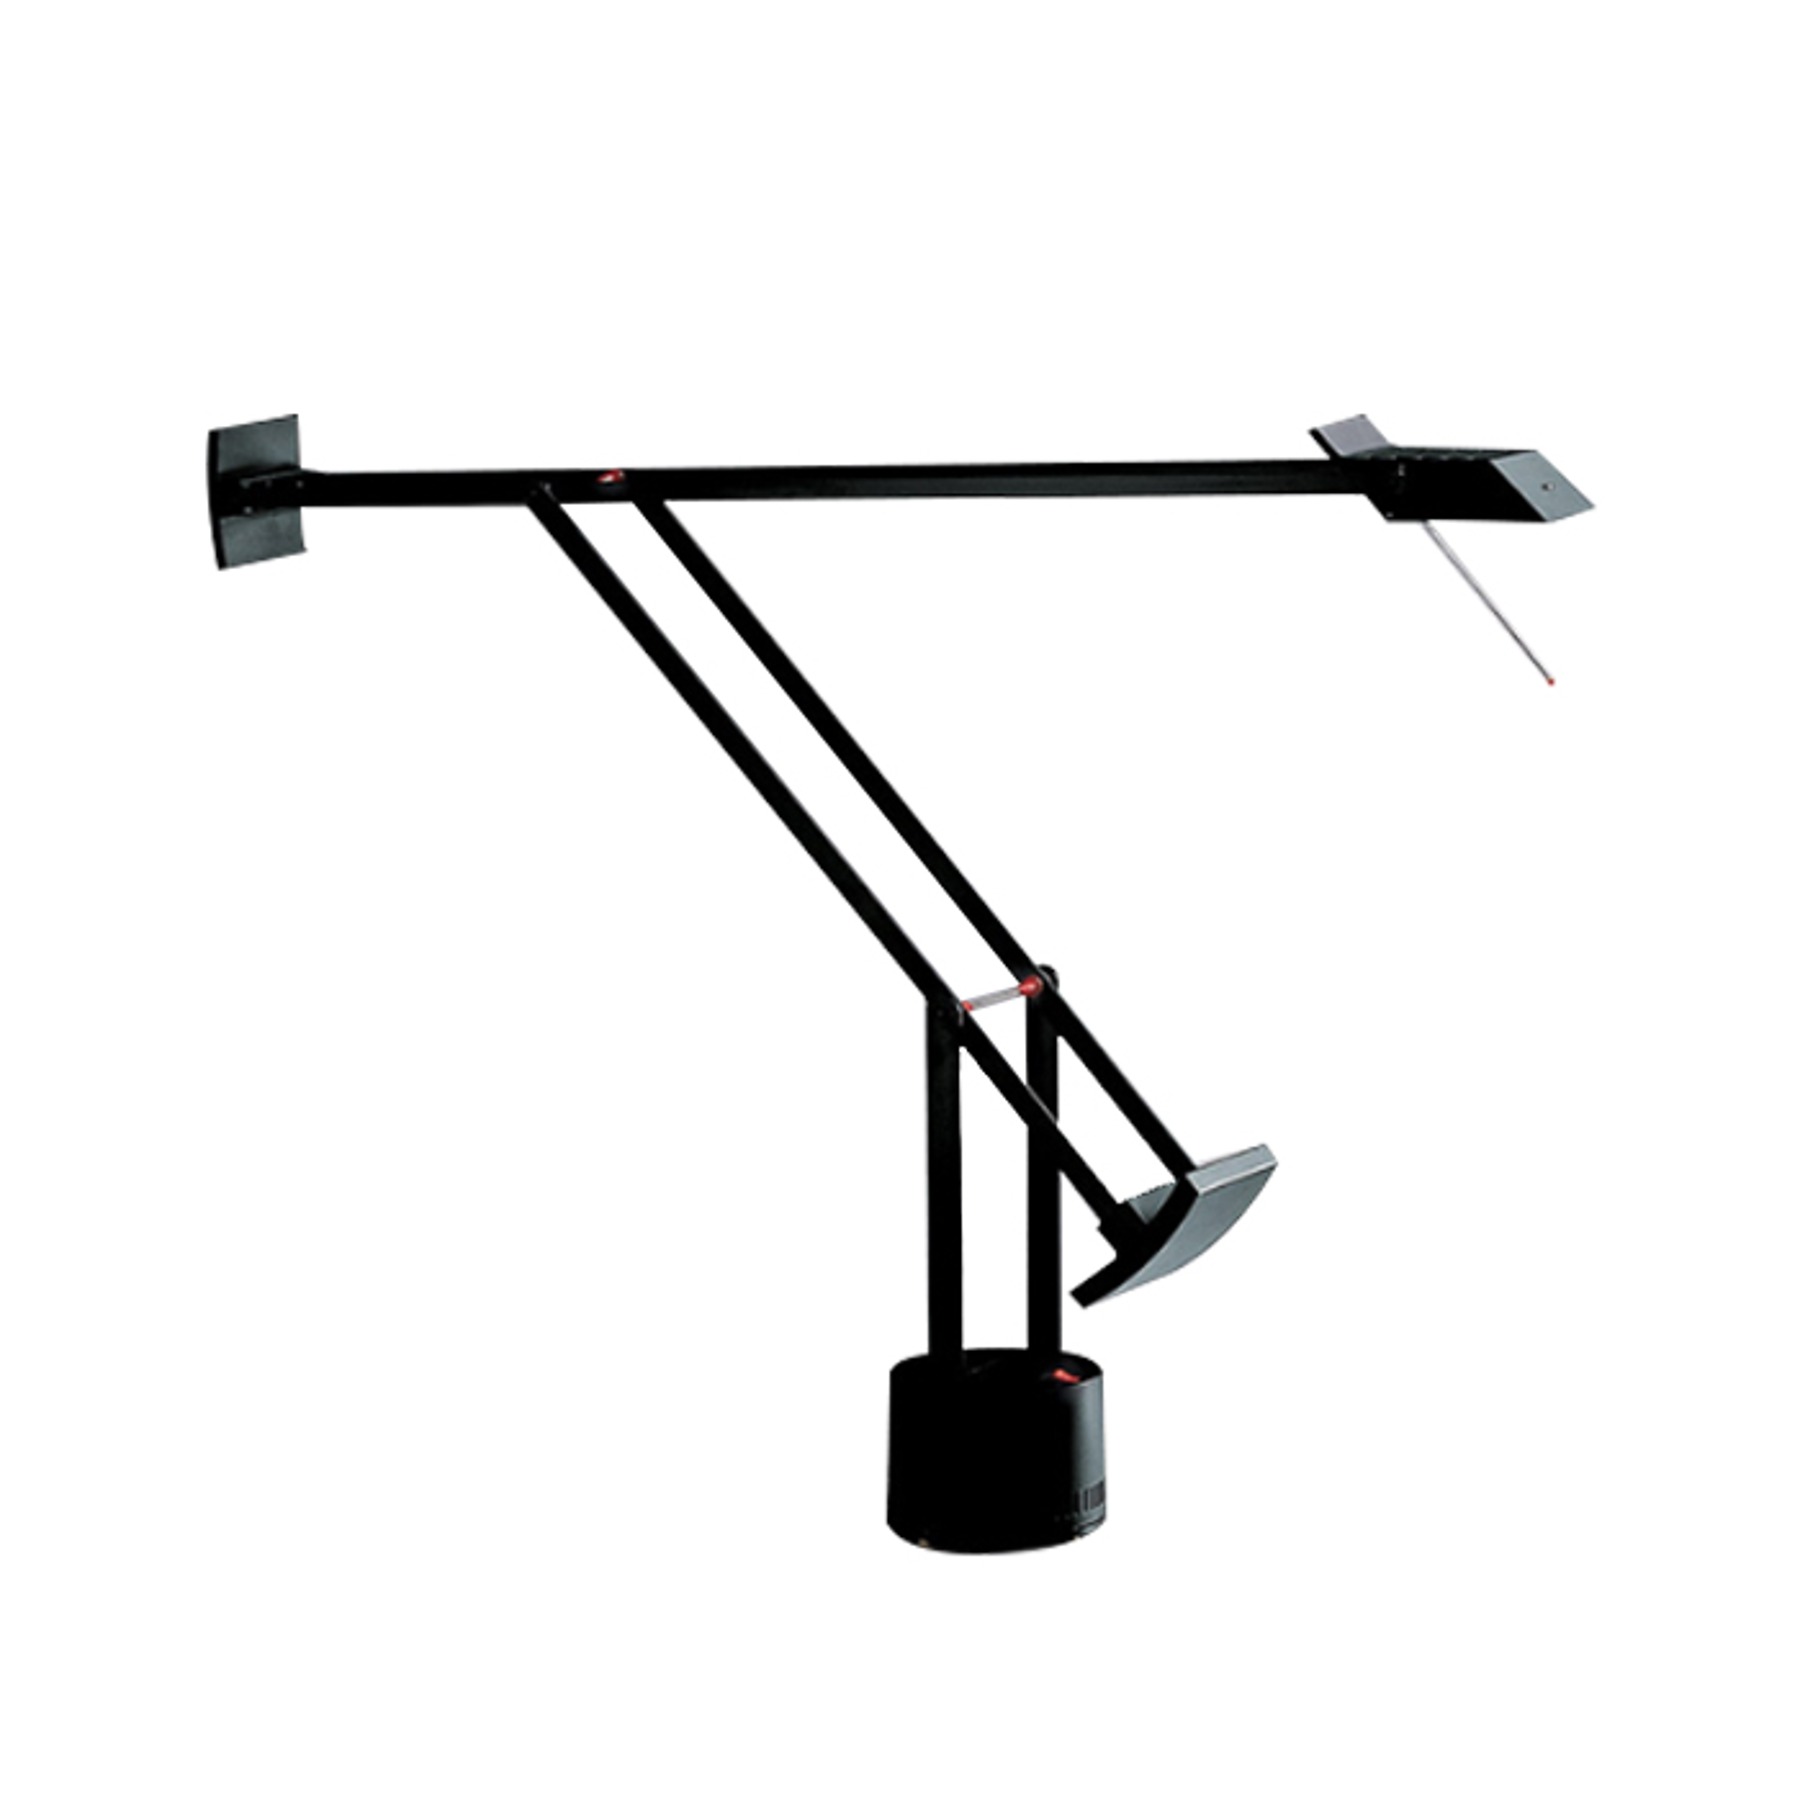 Artemide Tizio / Tizio35 Table Lamp (Black) 아르데미데 티지오 / 티지오35 테이블 램프 (블랙)